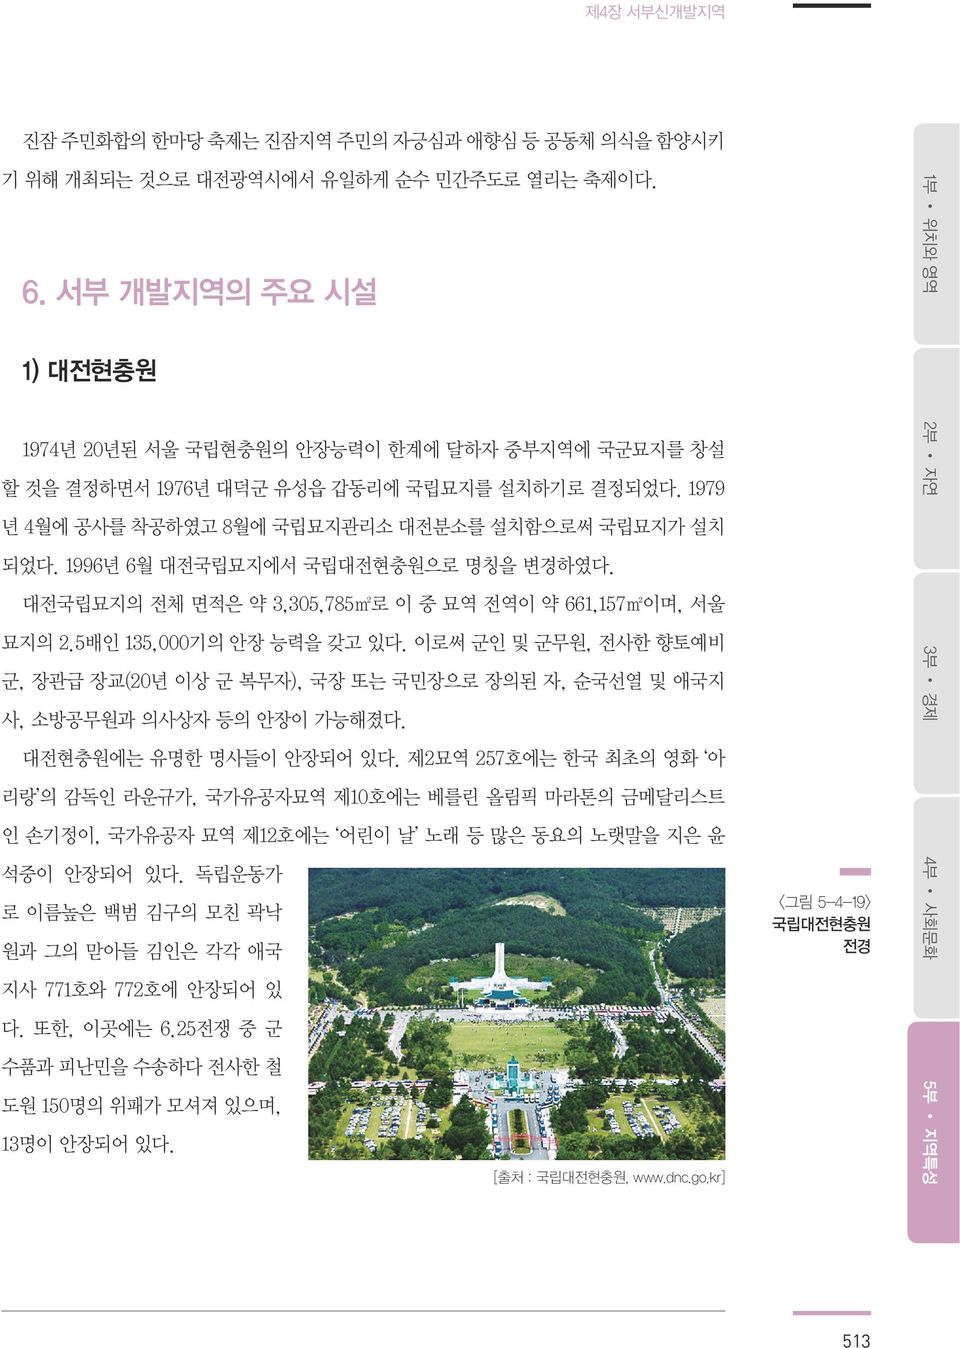 1996년 6월 대전국립묘지에서 국립대전현충원으로 명칭을 변경하였다. 대전국립묘지의 전체 면적은 약 3,305,785m2로 이 중 묘역 전역이 약 661,157m2이며, 서울 묘지의 2.5배인 135,000기의 안장 능력을 갖고 있다.